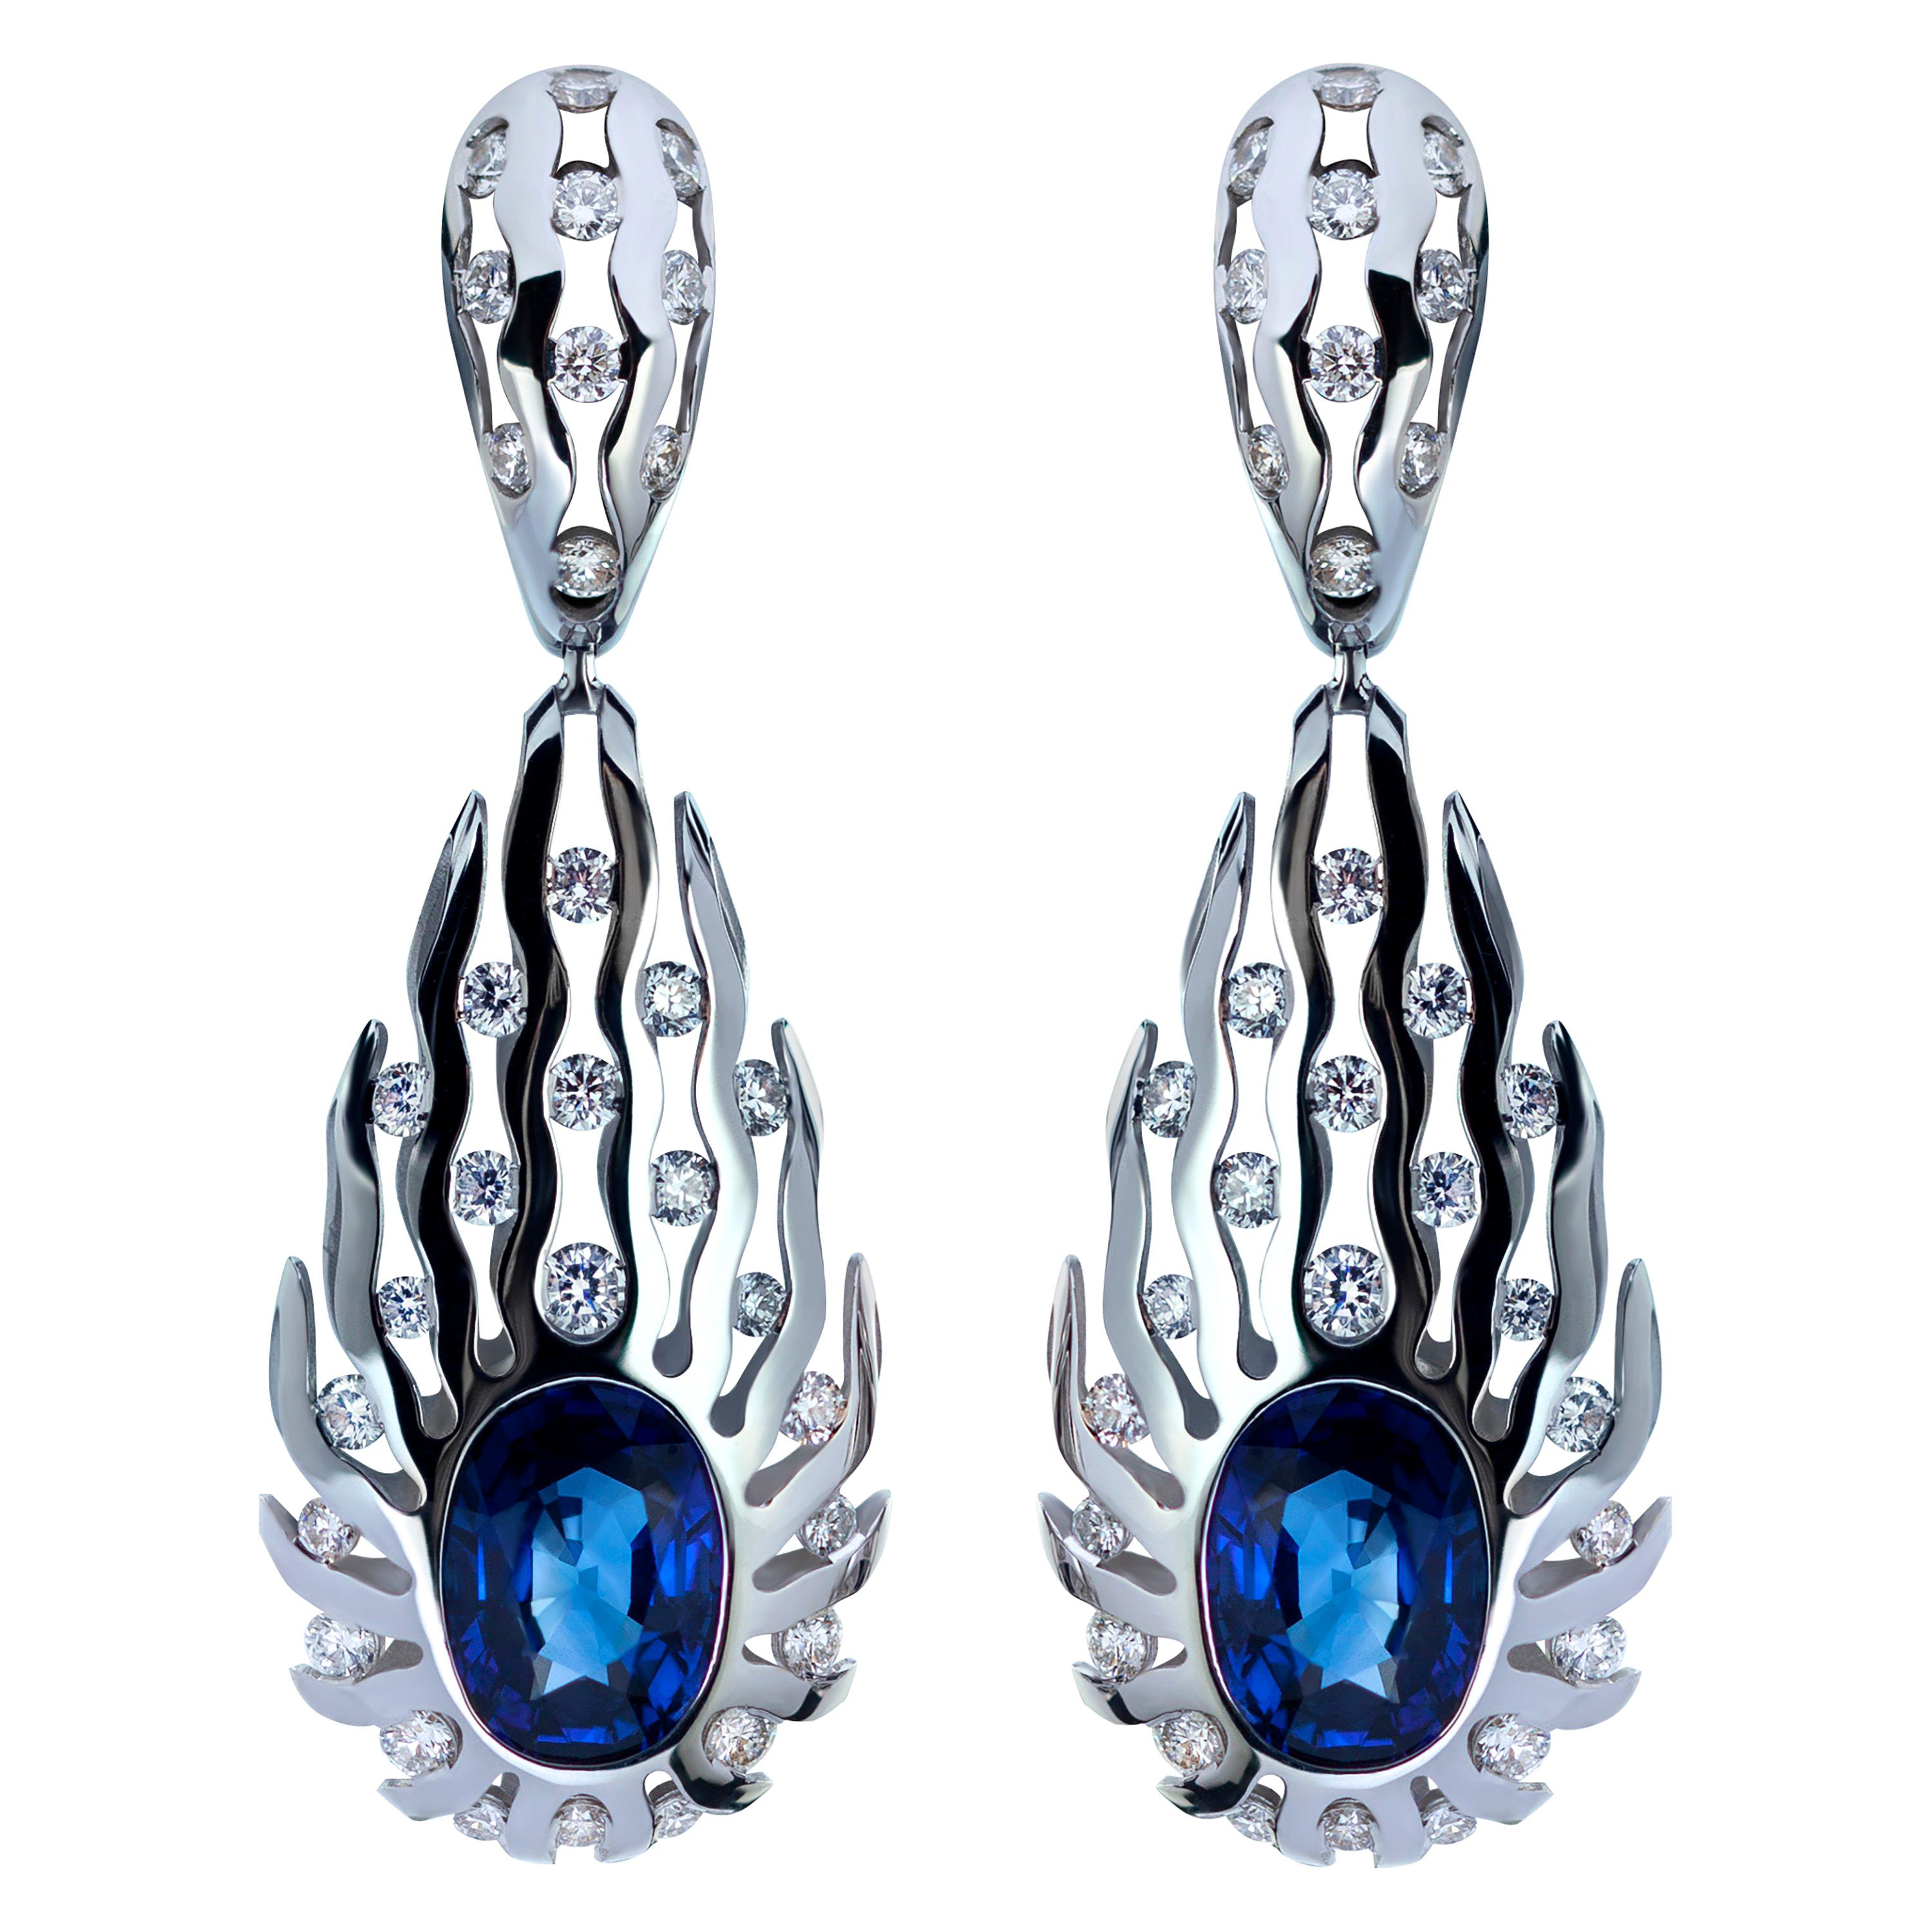 GRS Certified 8.03 Carat Blue Sapphire Diamonds 18 Karat White Gold Earrings